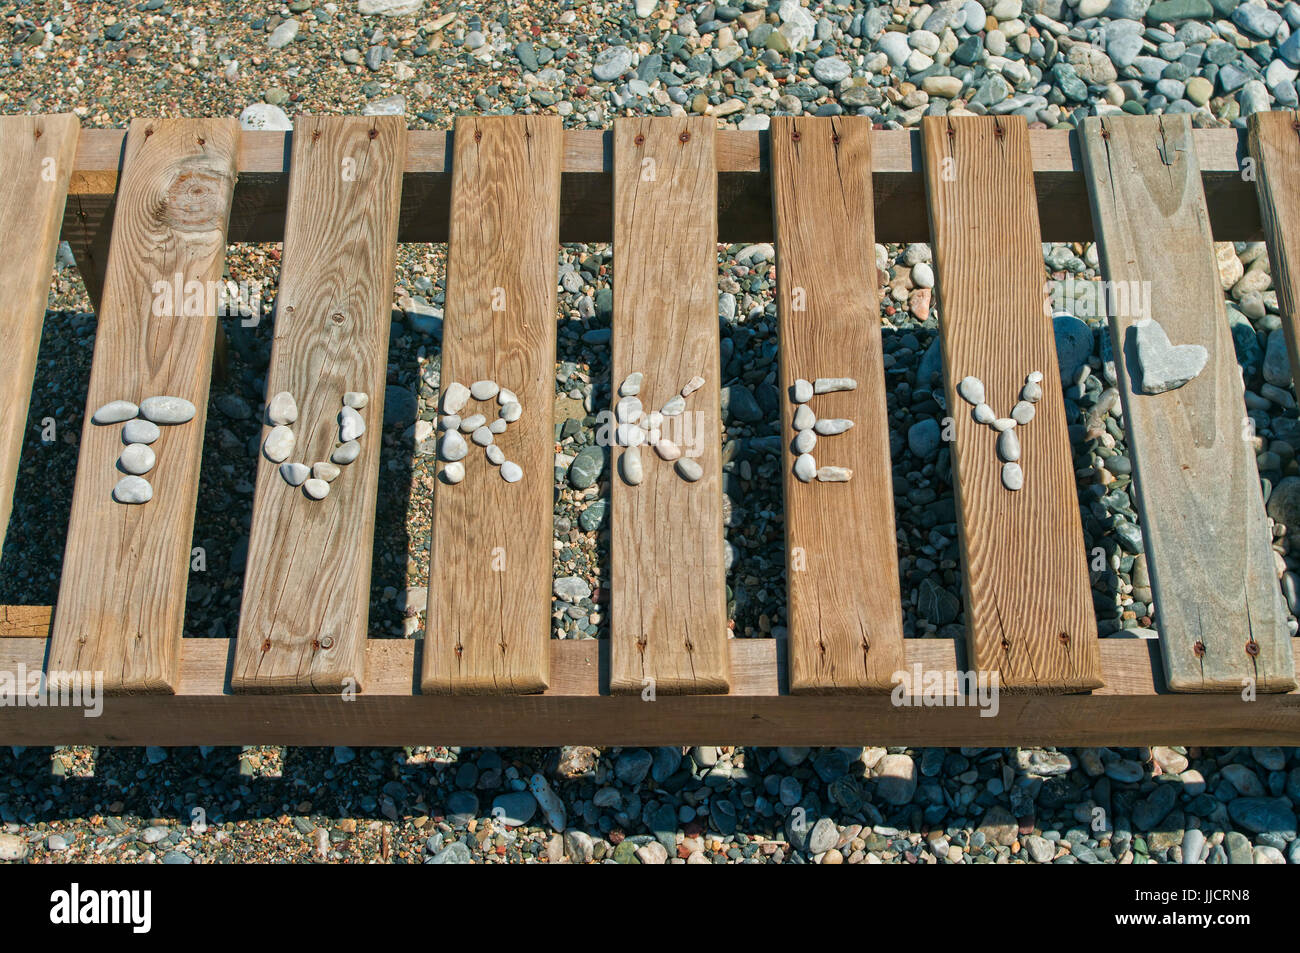 Wort-Türkei gesäumt mit kleinen Kieselsteinen auf hölzernen Liegestuhl mit herzförmigen Stine am Kiesstrand, Marmaris, Türkei Stockfoto